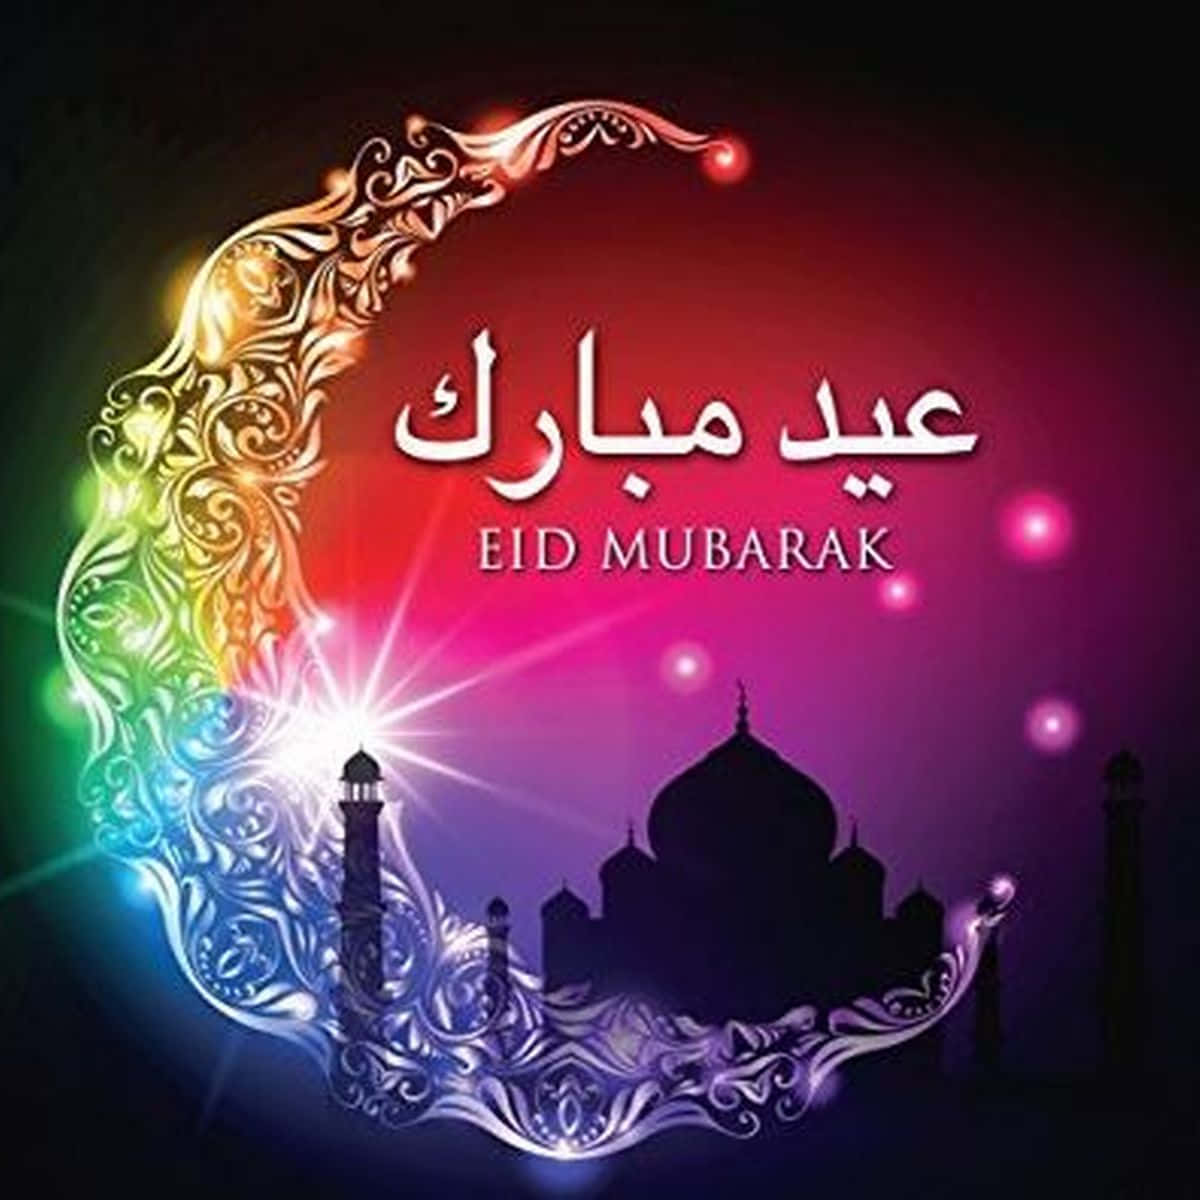 Ønskerdig Og Dine En Glædelig Eid Mubarak Fyldt Med Kærlighed, Glæde Og Lykke!